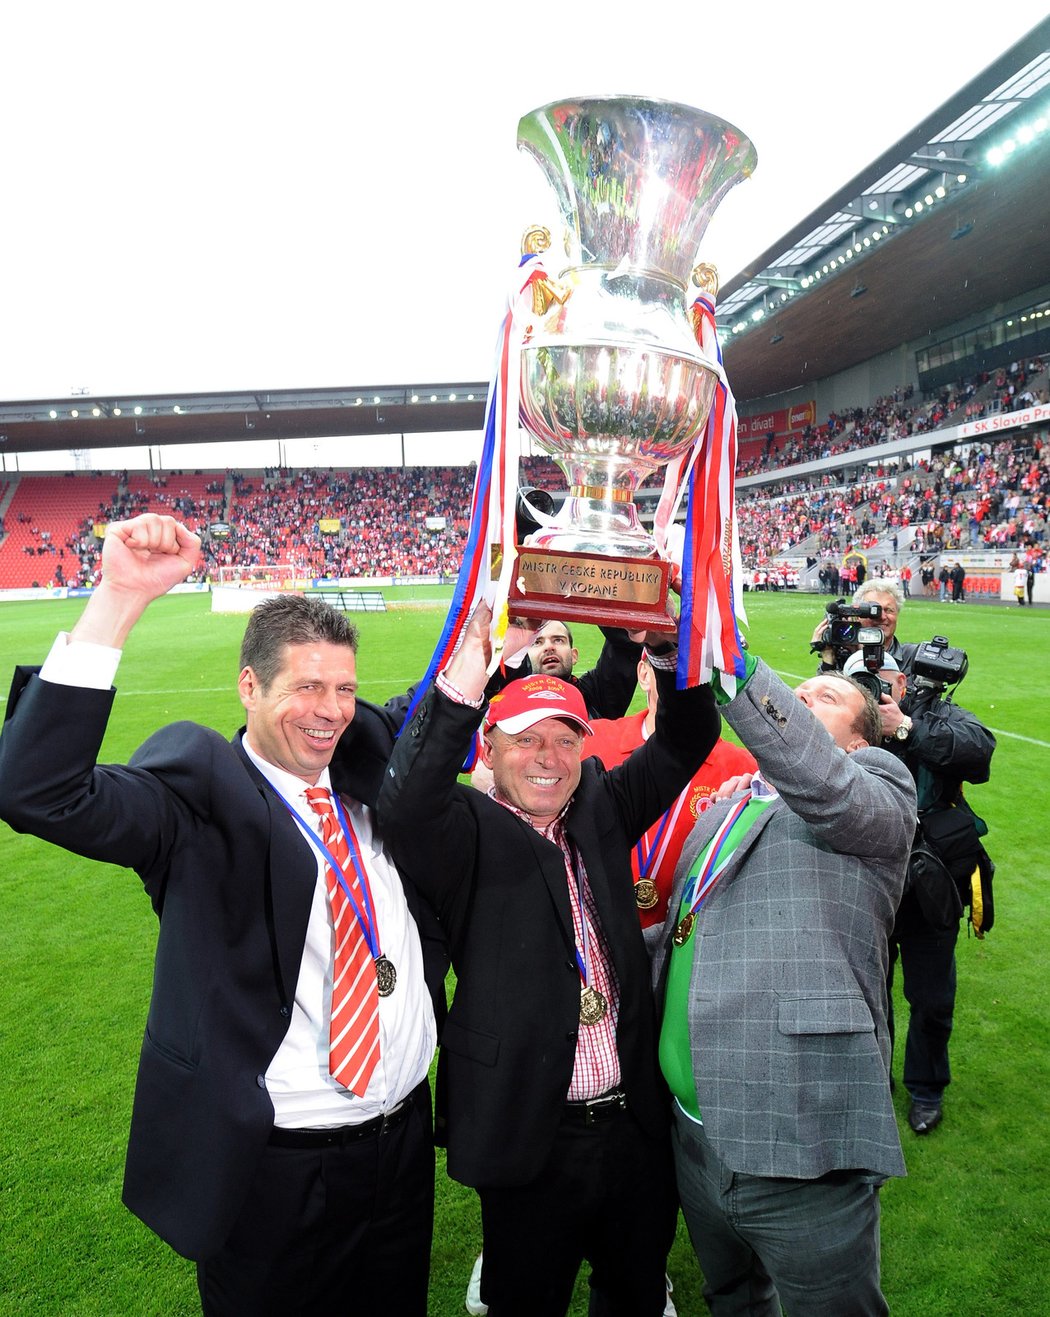 Slavia po utkání proti Liberci přebrala pohár pro mistra ligy 2008/09. Šéfové Slavie Petr Doležal a Tomáš Rosen, mezi nimi trenér Karel Jarolím.